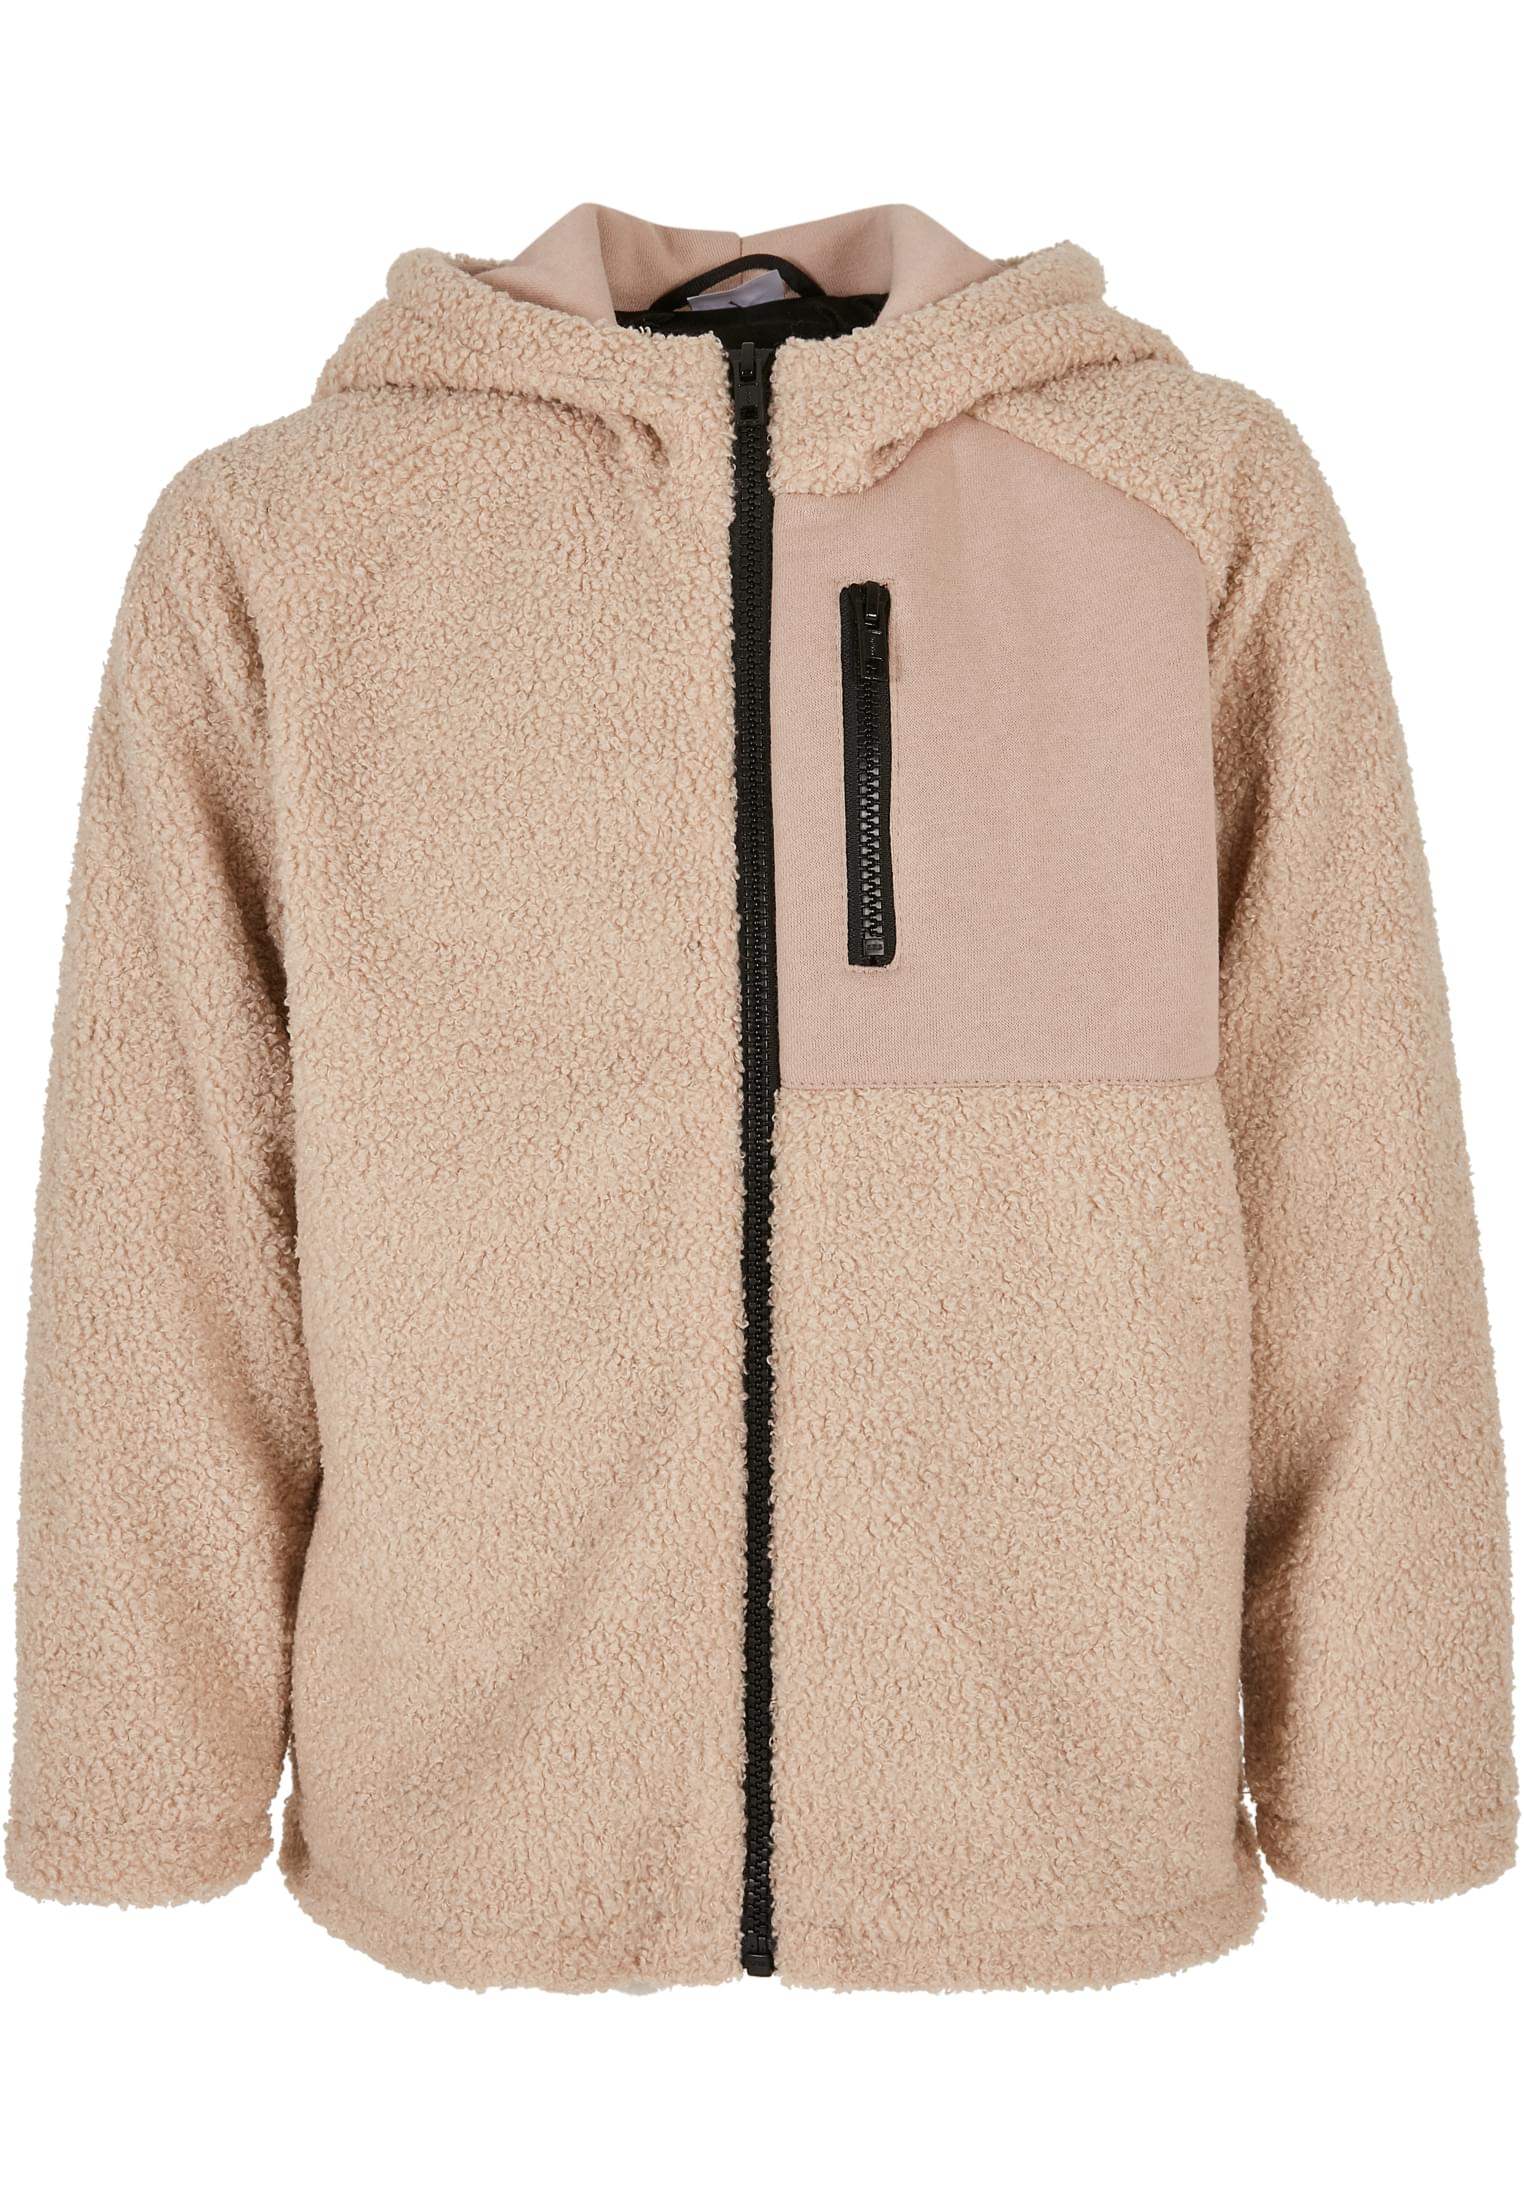 Levně Chlapecká bunda Sherpa s kapucí na zip darksand